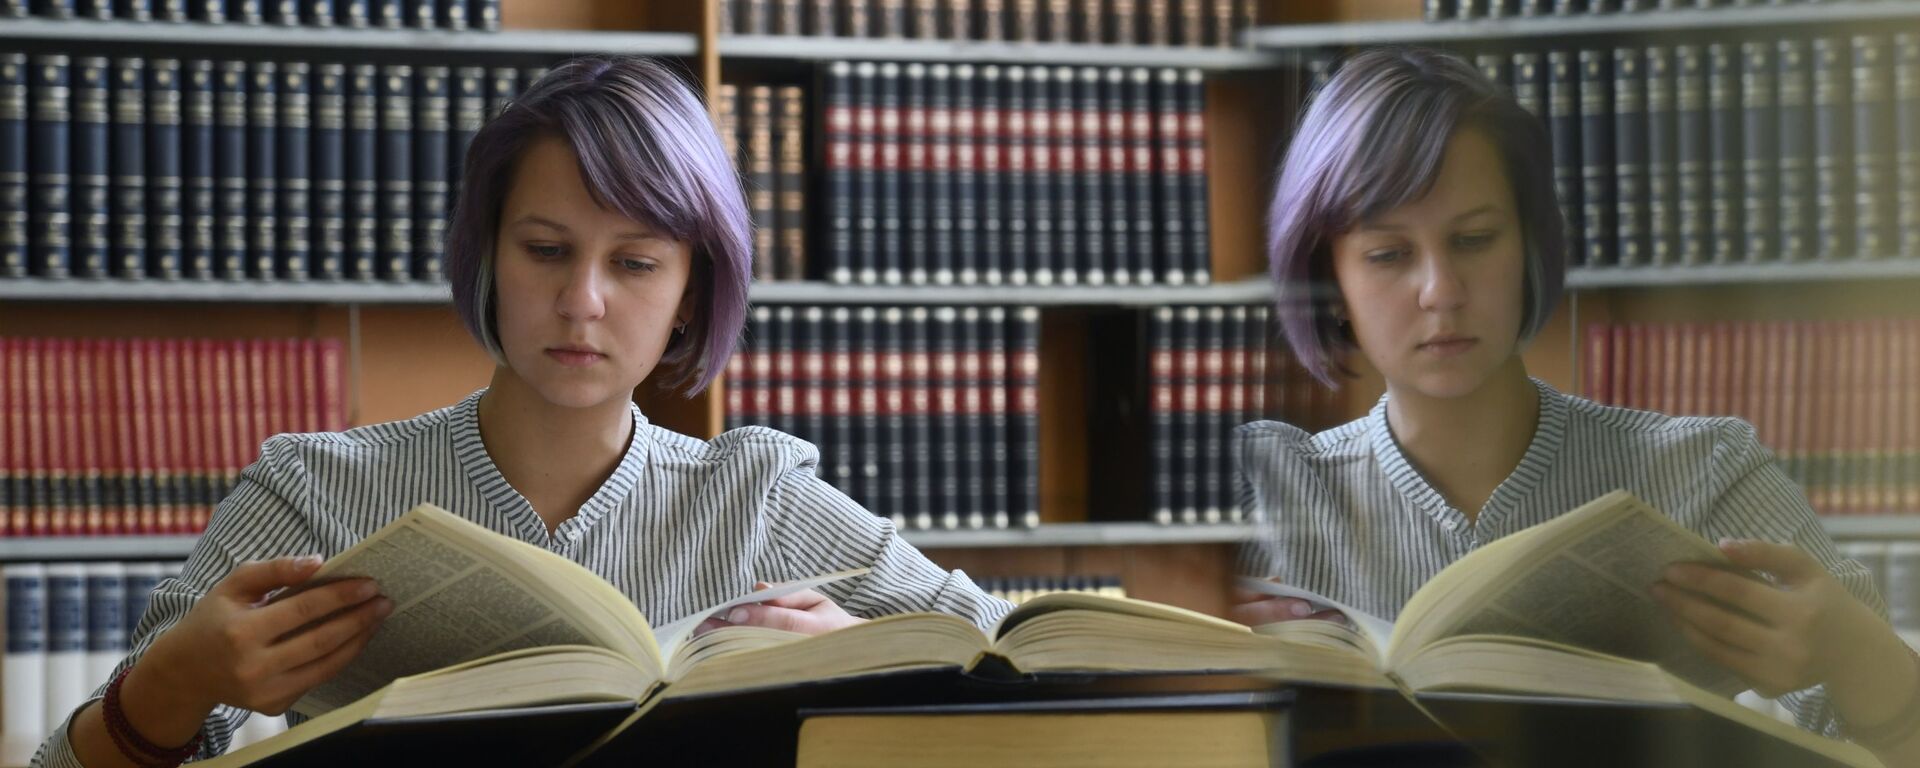 Девушка читает книгу в  библиотеке  - Sputnik Грузия, 1920, 09.03.2021